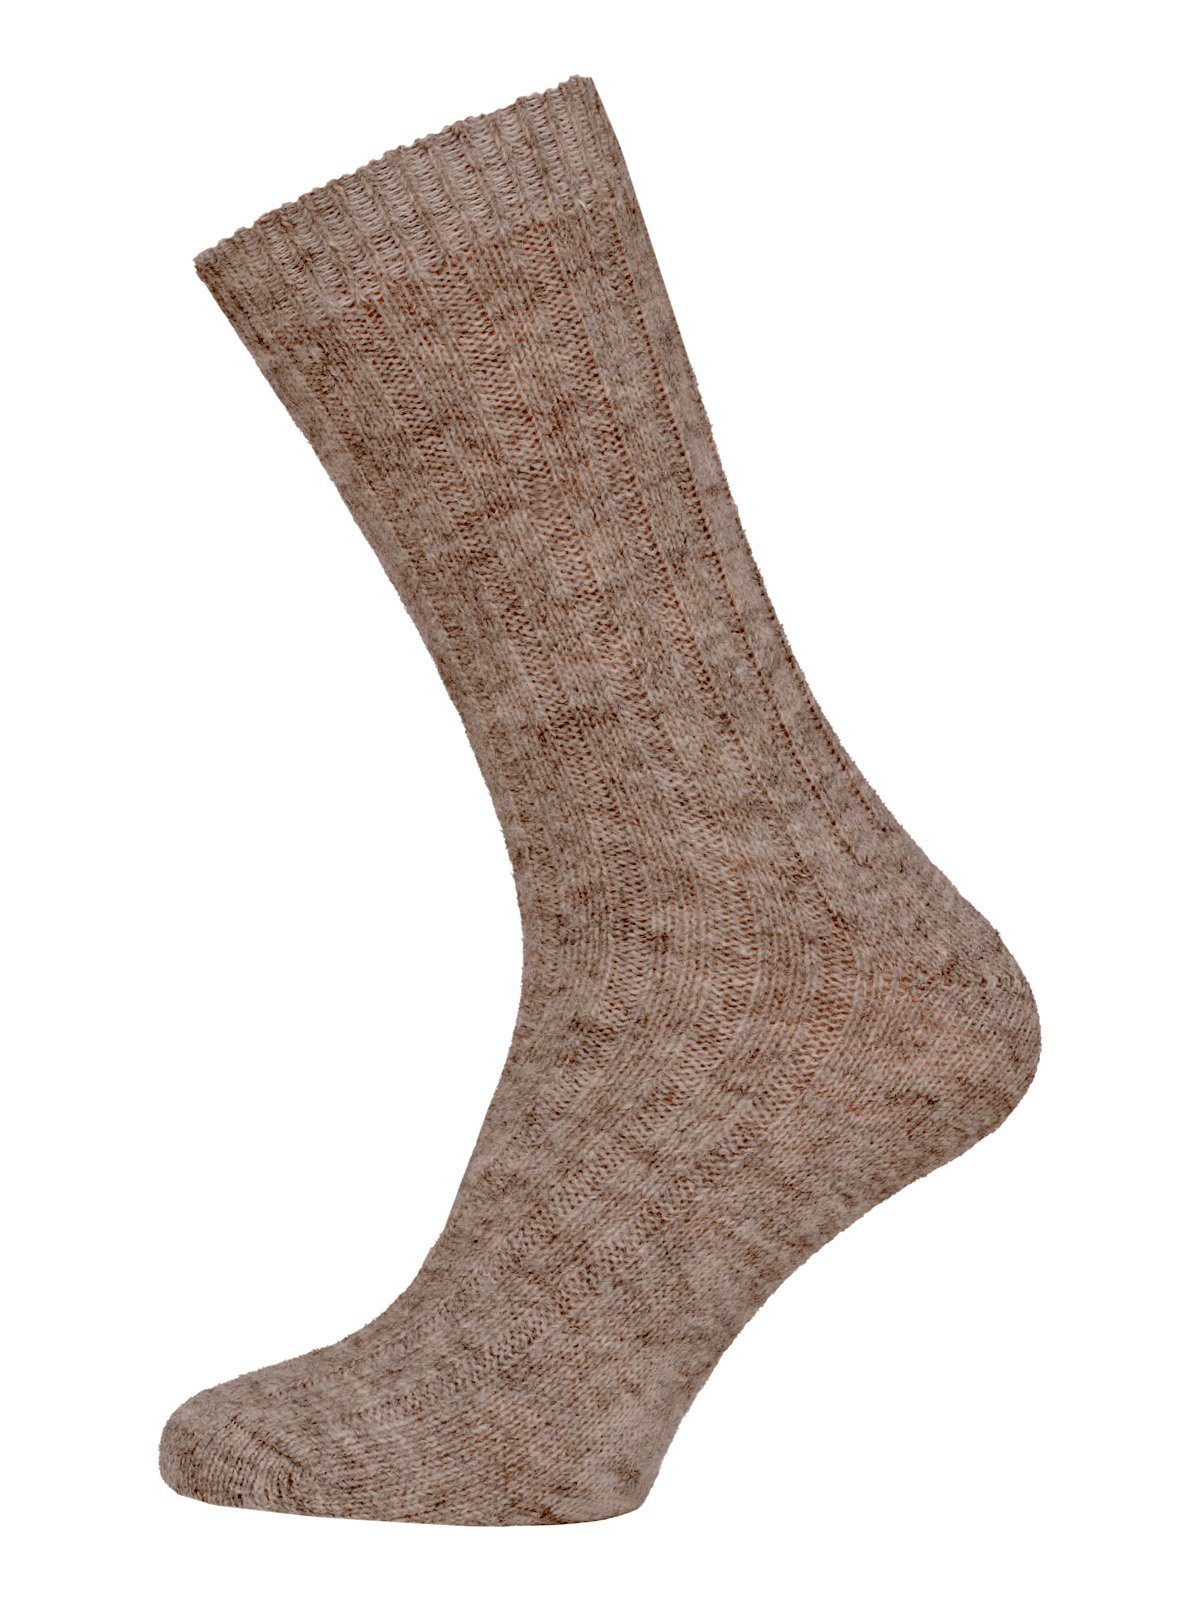 HomeOfSocks Socken Wollsocken aus 95% Wolle (Alpakawolle & Schurwolle) Taupe